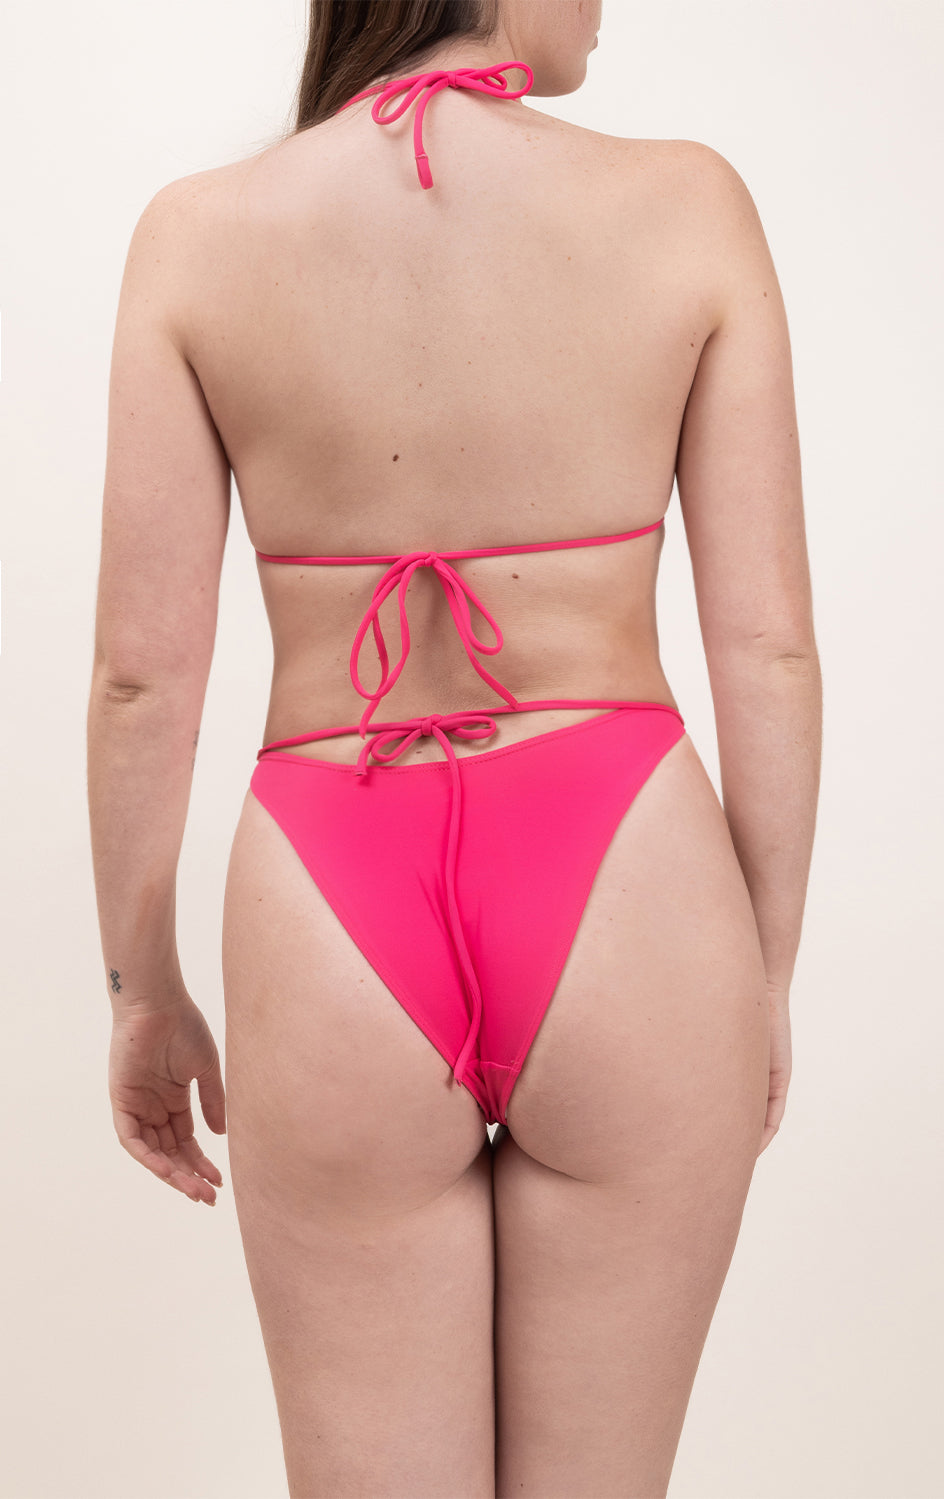 Photo d'une femme portant le haut de maillot de bain Lucia rose saphire, en matière éponge, de dos